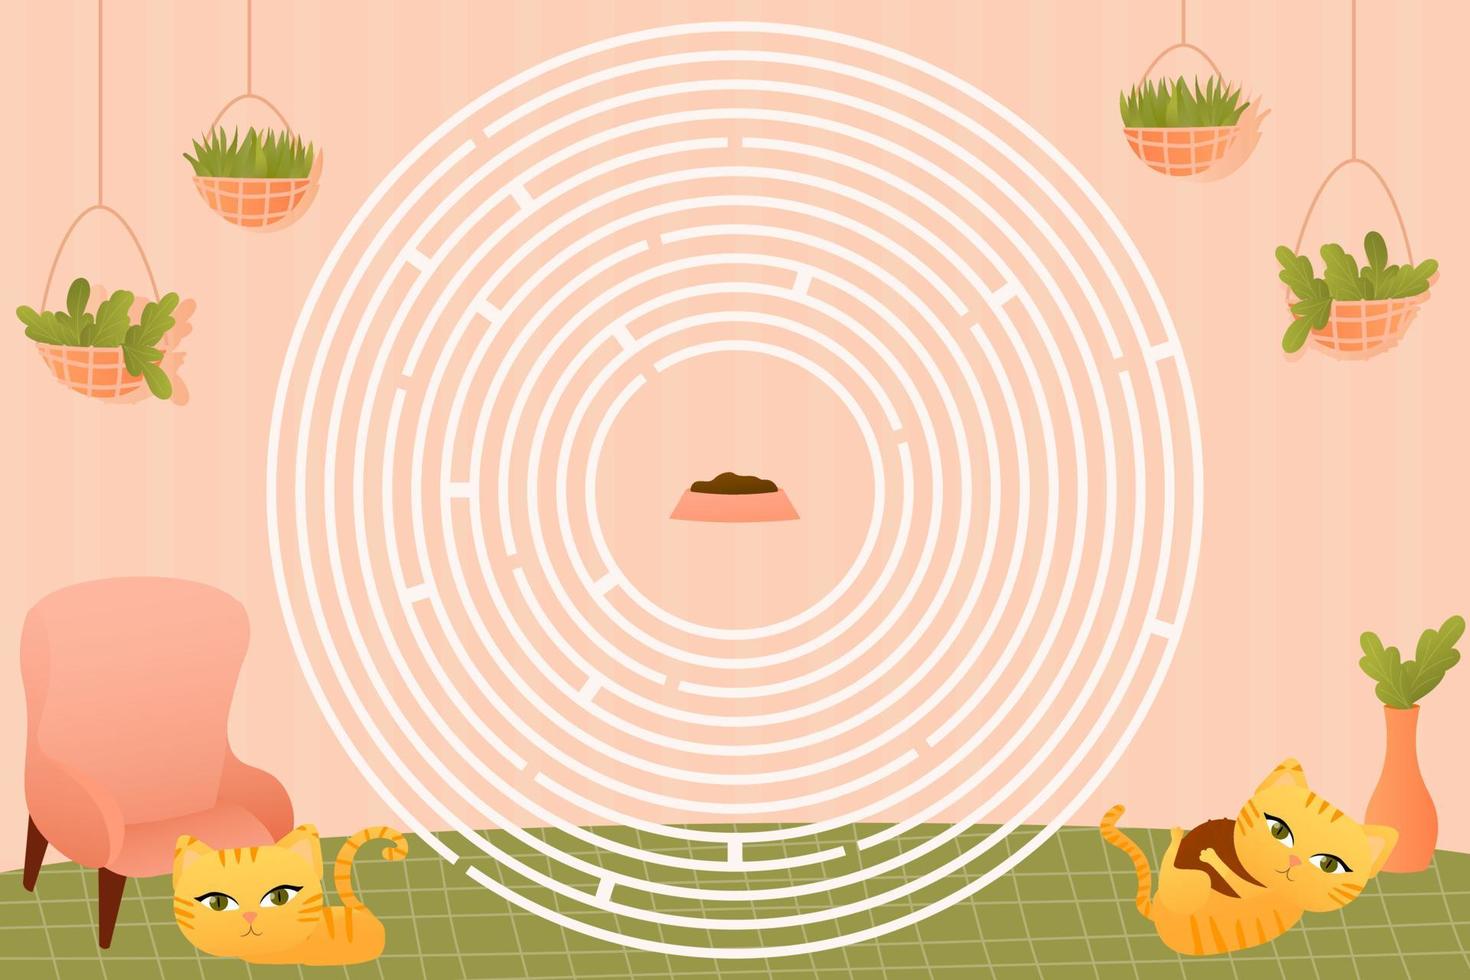 labirinto circular para crianças imprimíveis com personagens animais fofos gatos vermelhos brincando, ajuda a encontrar o caminho para a comida, questionário para livro vetor